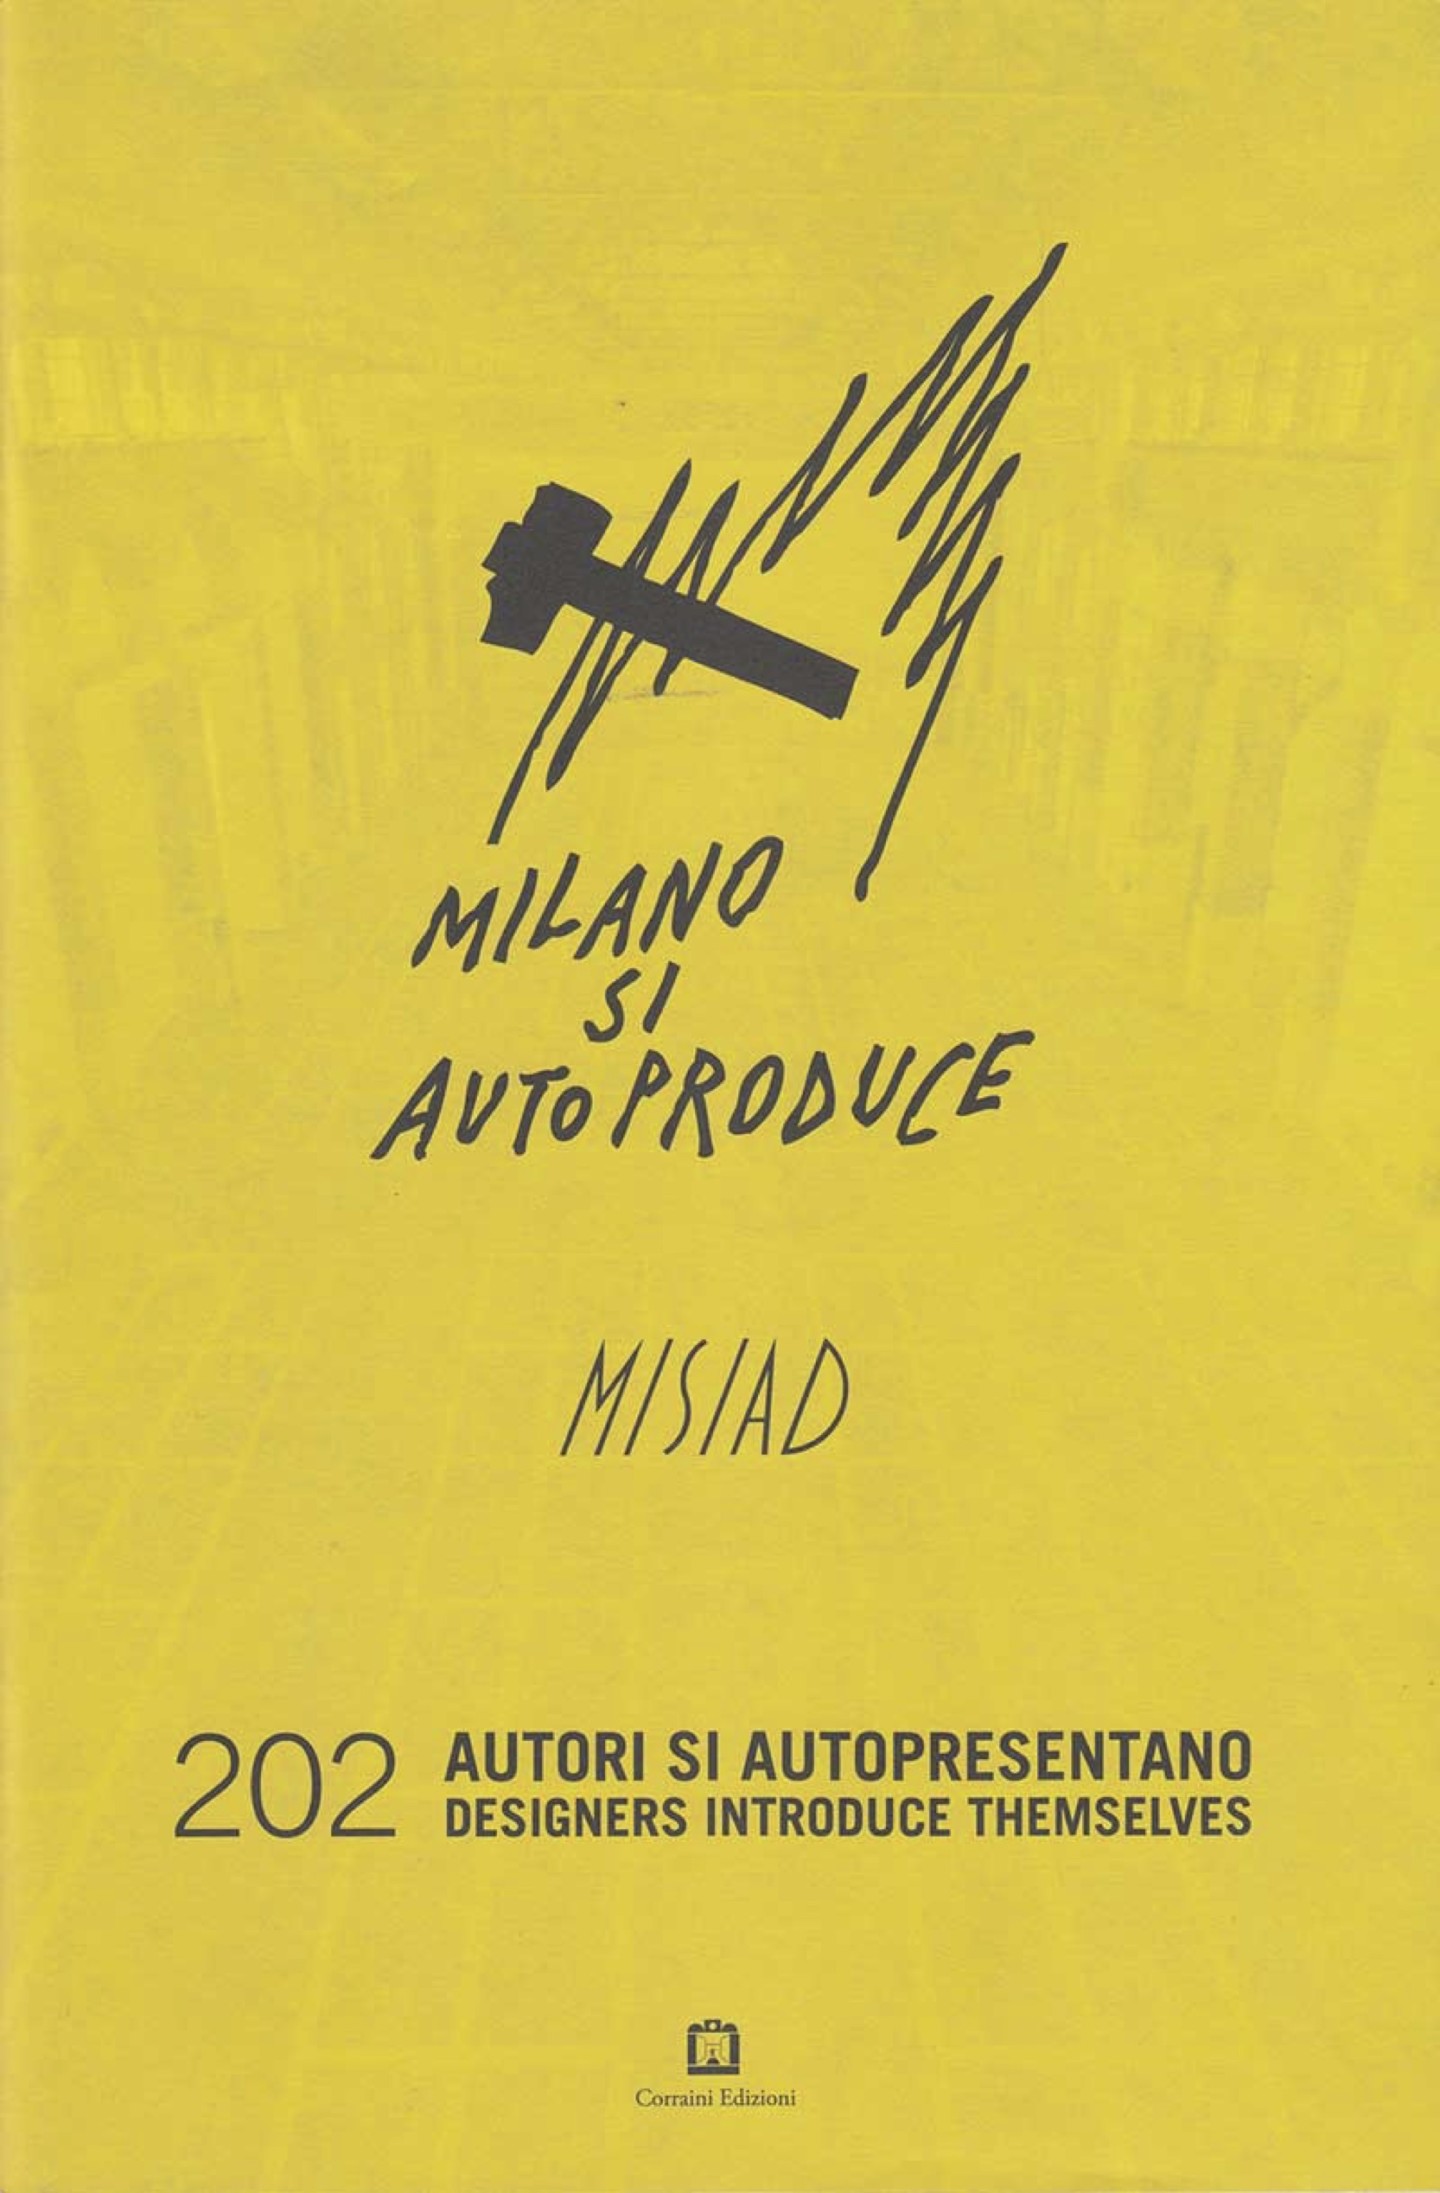 Press Anna Gili - Catalogo Misiad Corradini Editore 2013